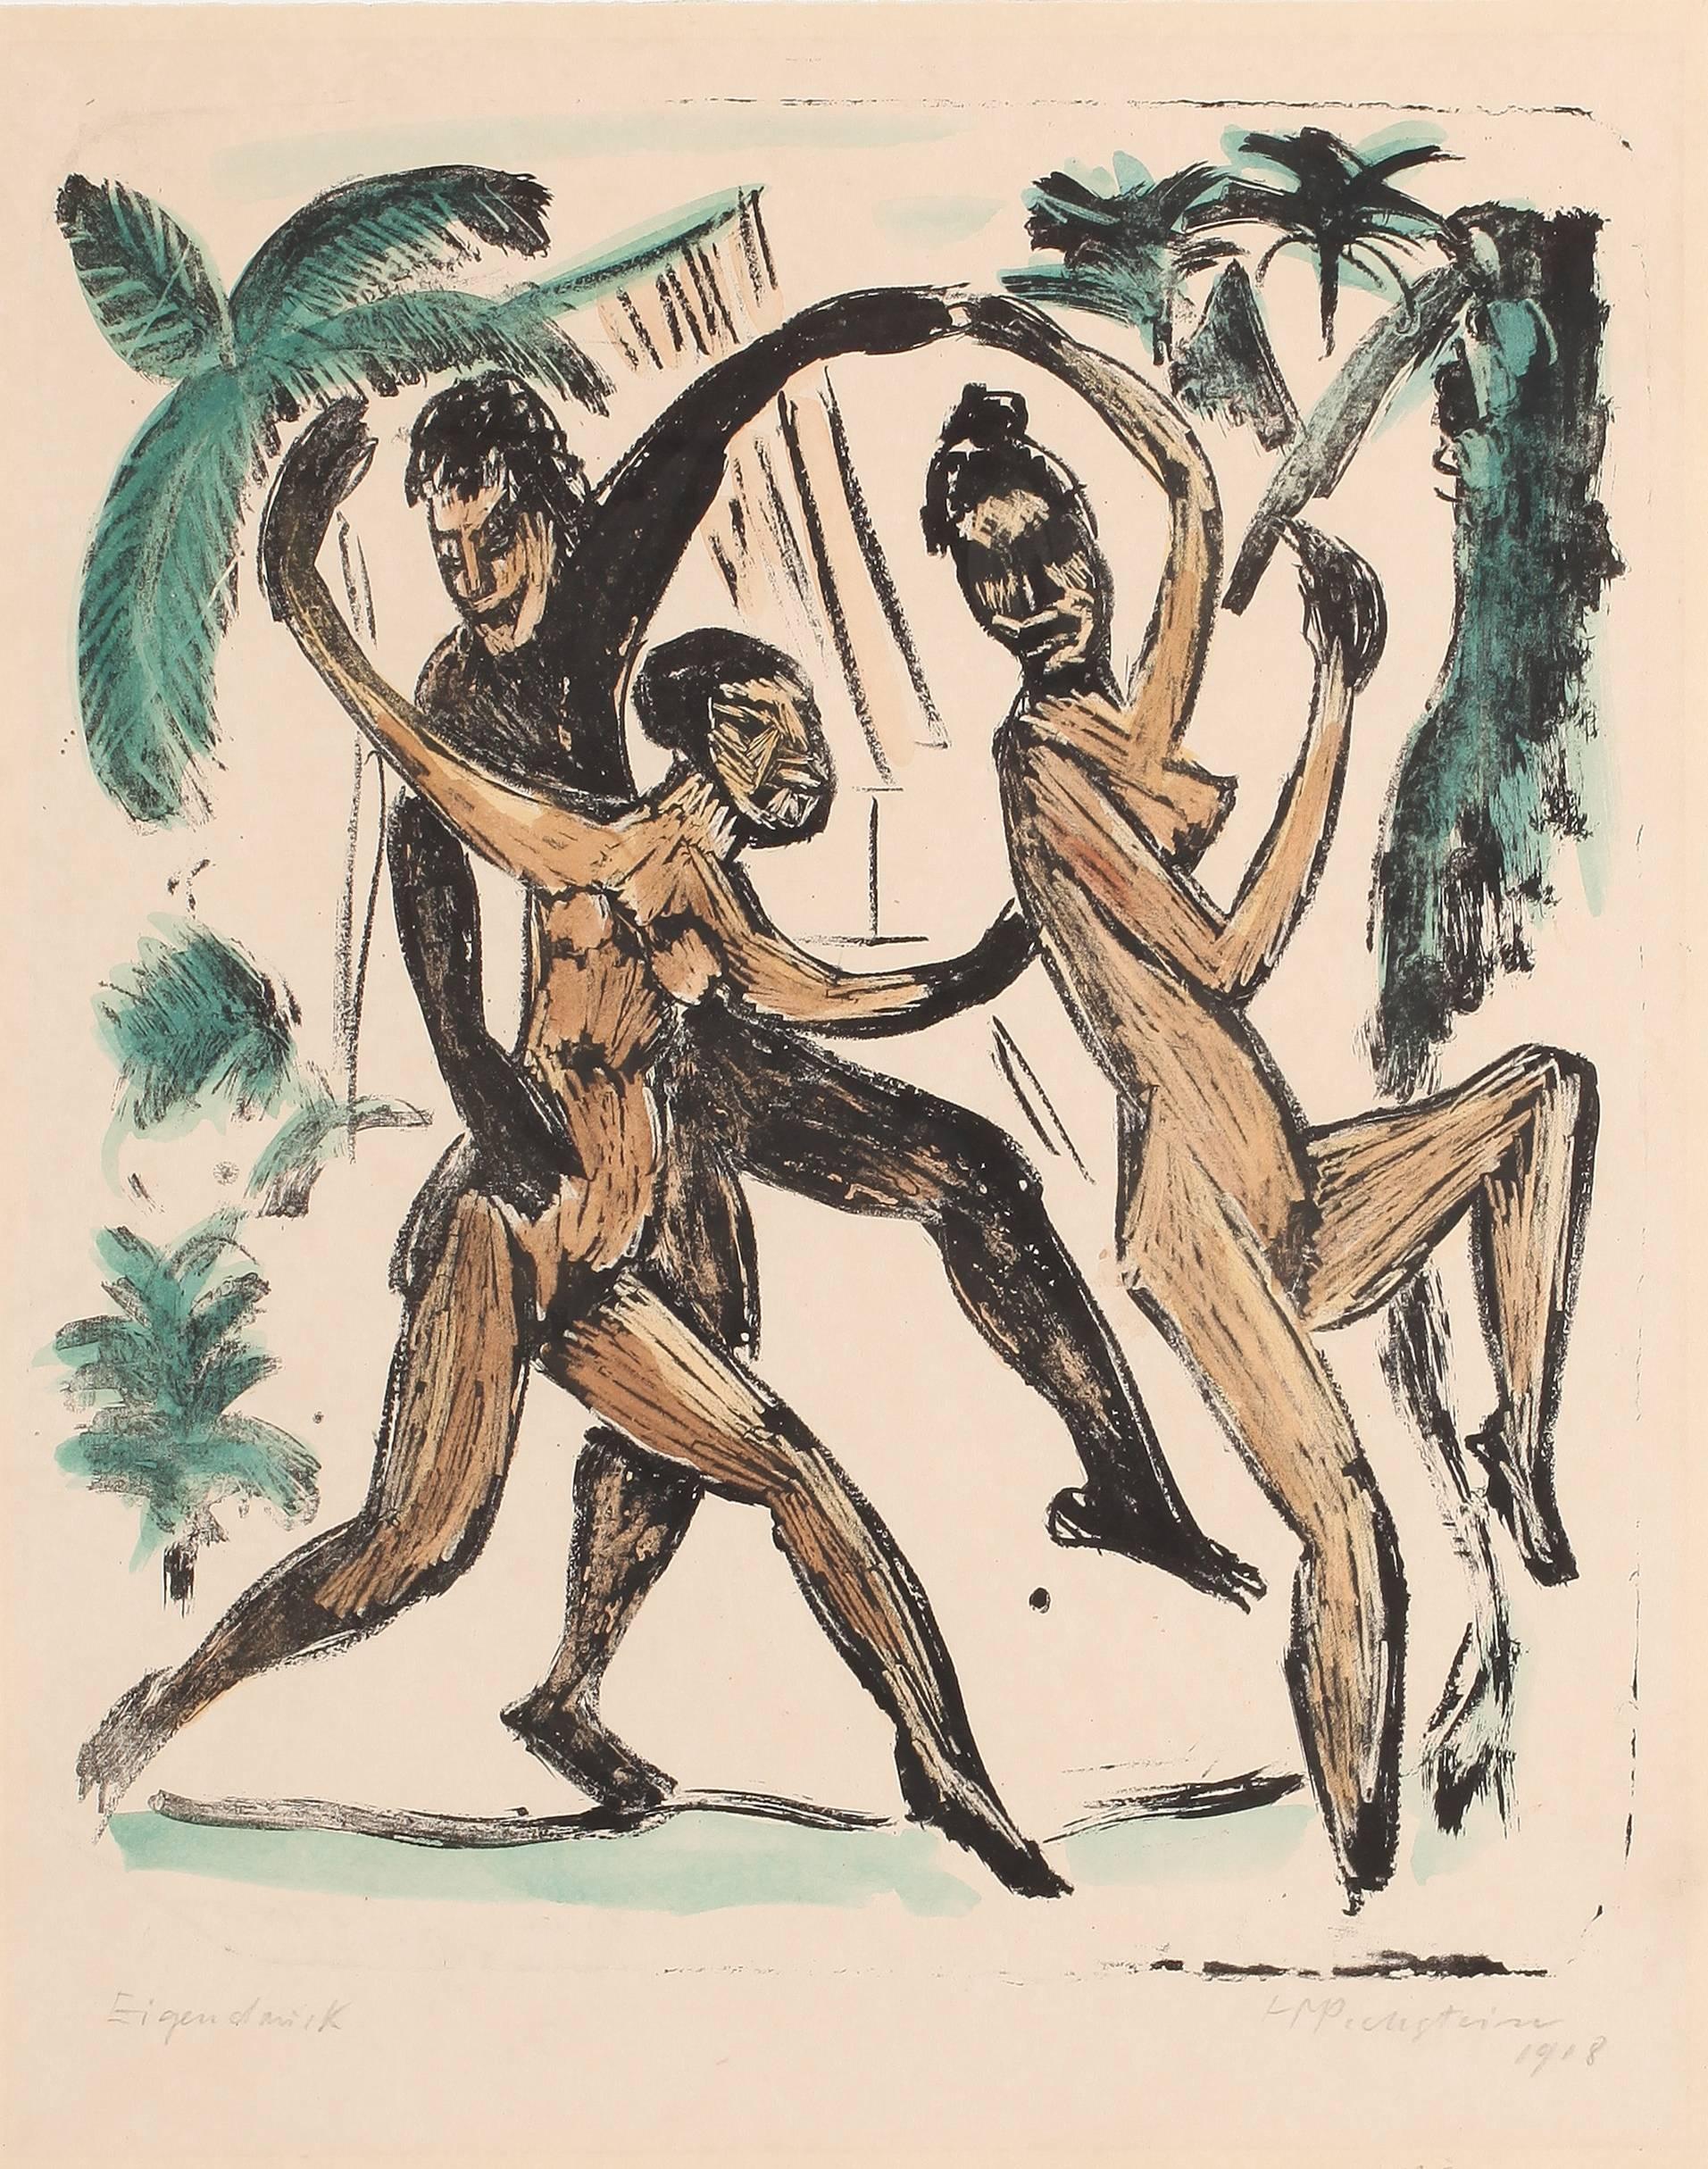 Drei Tanzende Akte (Three Dancing Nudes) - Print by Hermann Max Pechstein